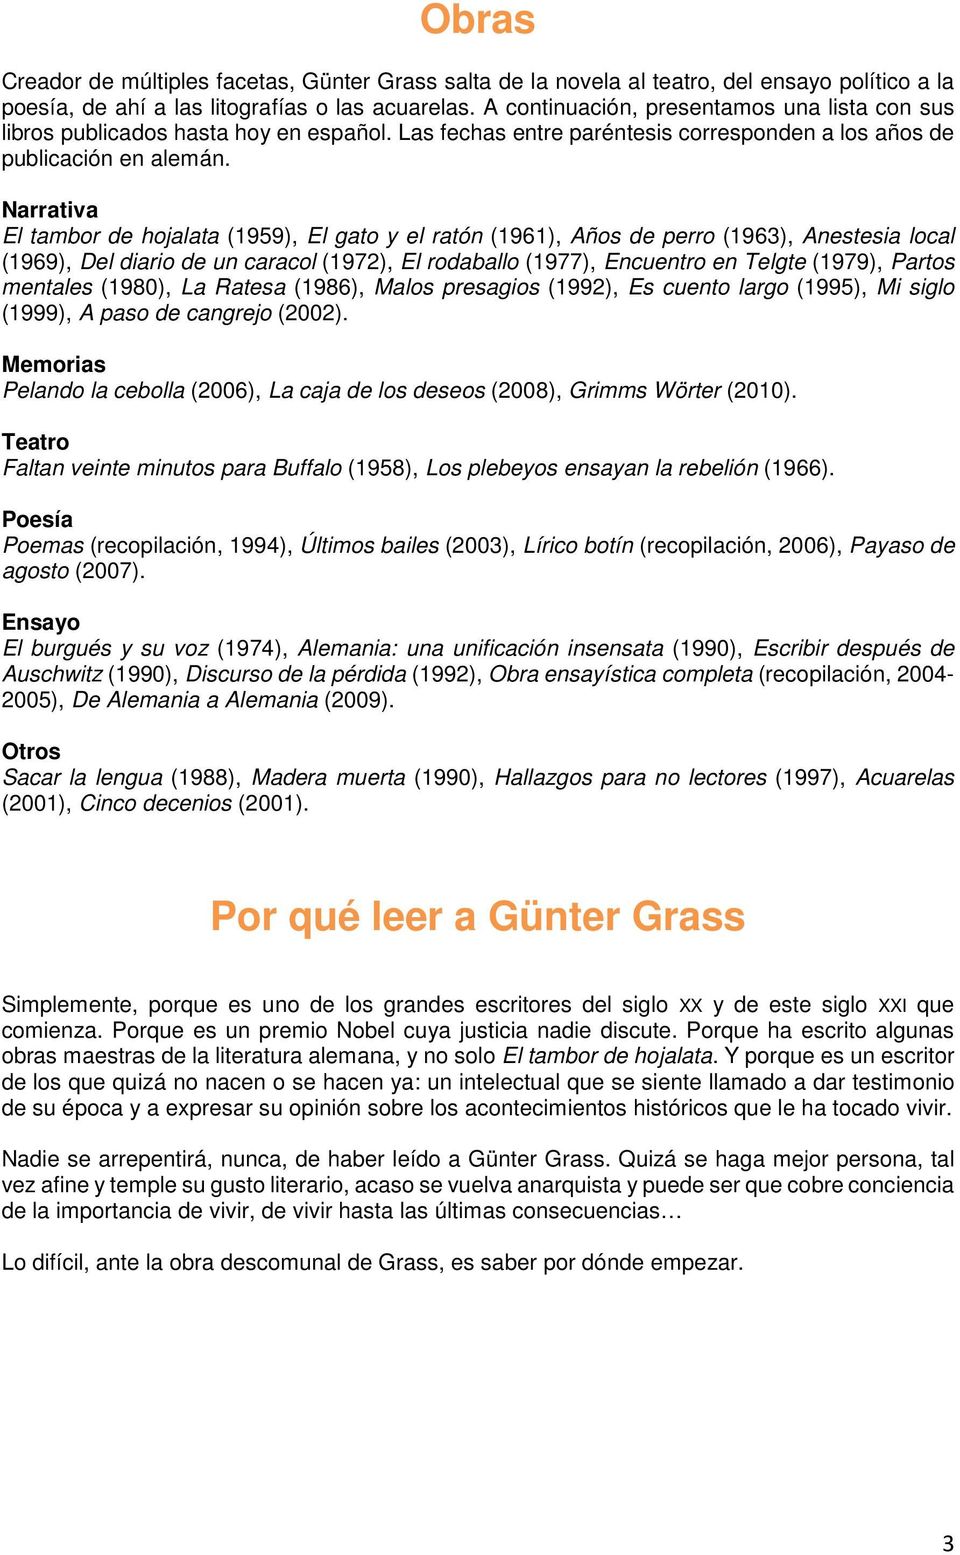 UNA PARA LEER A GÜNTER GRASS. Por Miguel Sáenz - PDF Free Download